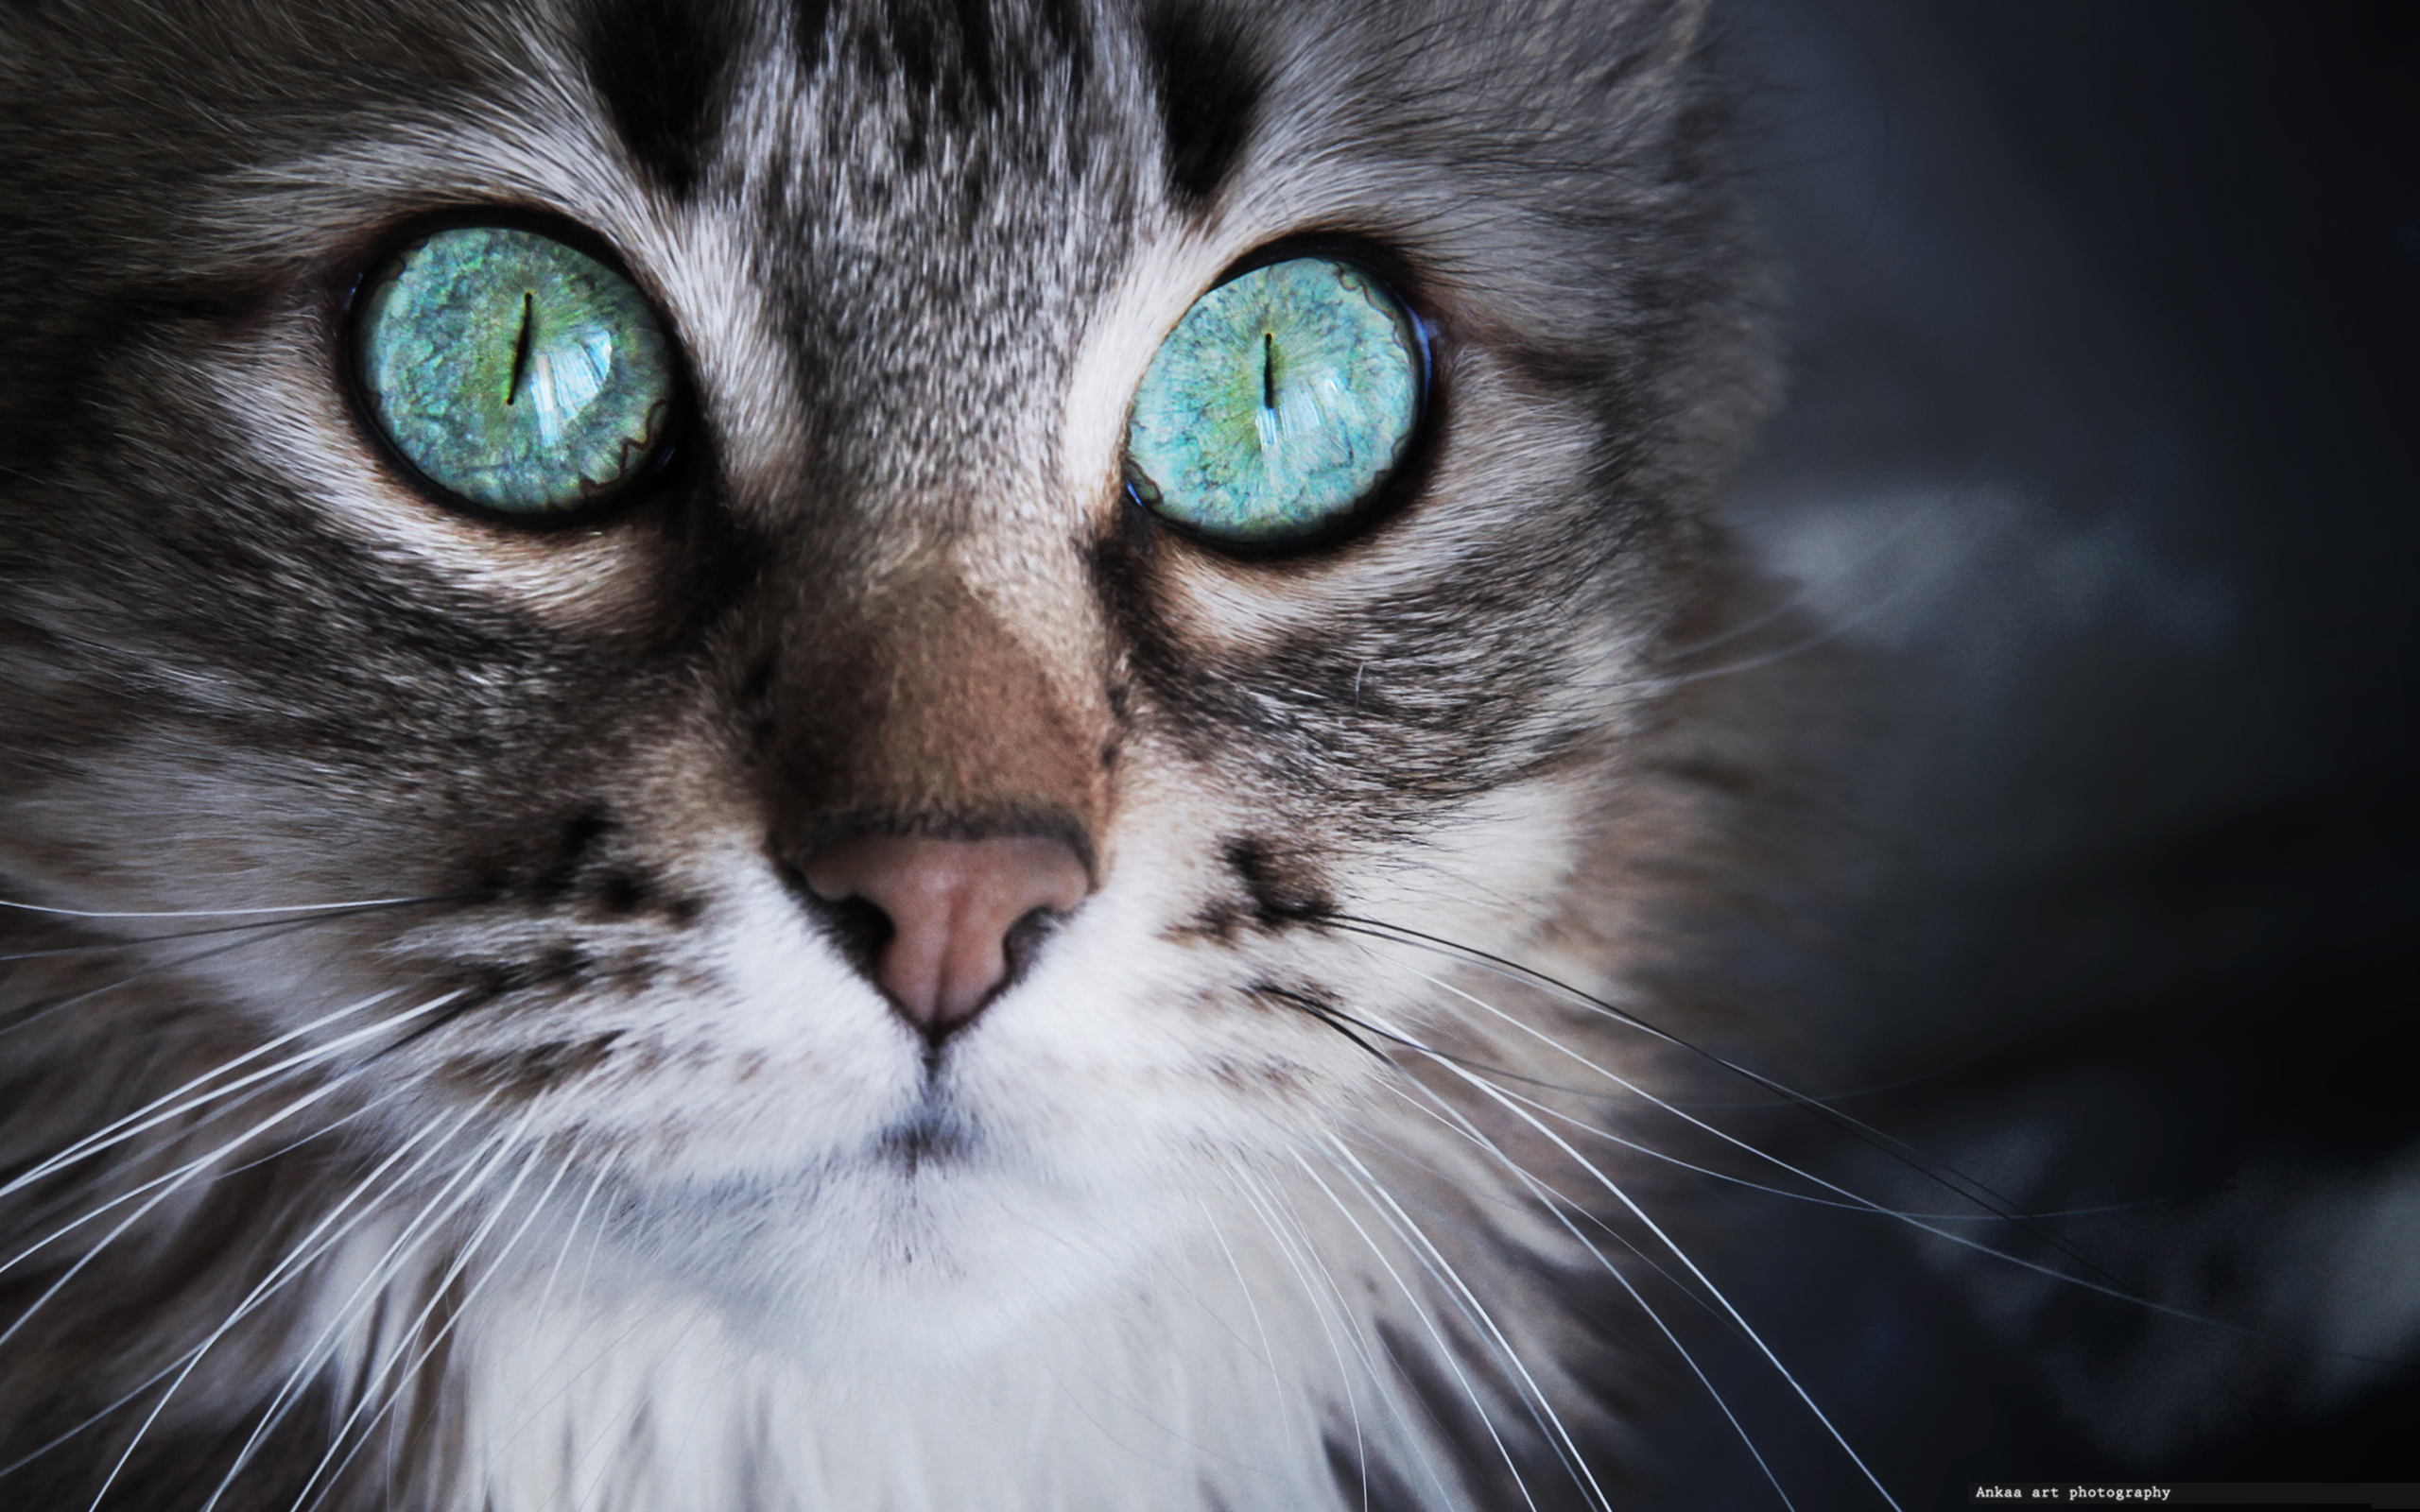 Фото на аву кошки. Красивые кошки. Красивые кошачьи глаза. Котик с бирюзовыми глазами. Коты с бирюзовыми глазами.